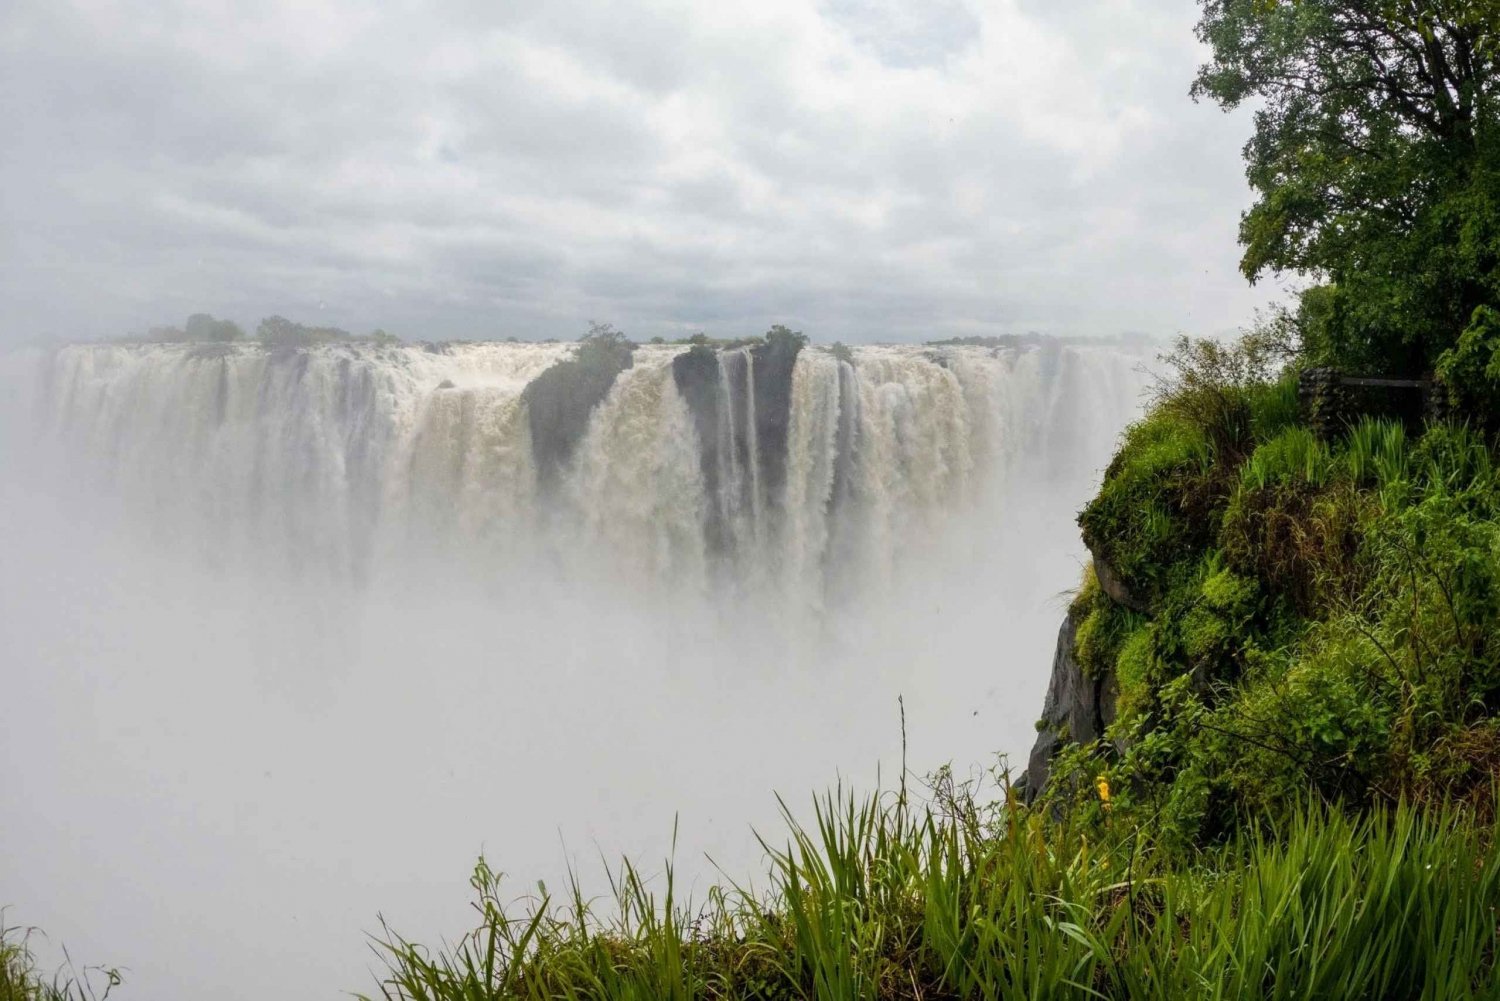 Zâmbia: Tour guiado pelas Cataratas Vitória